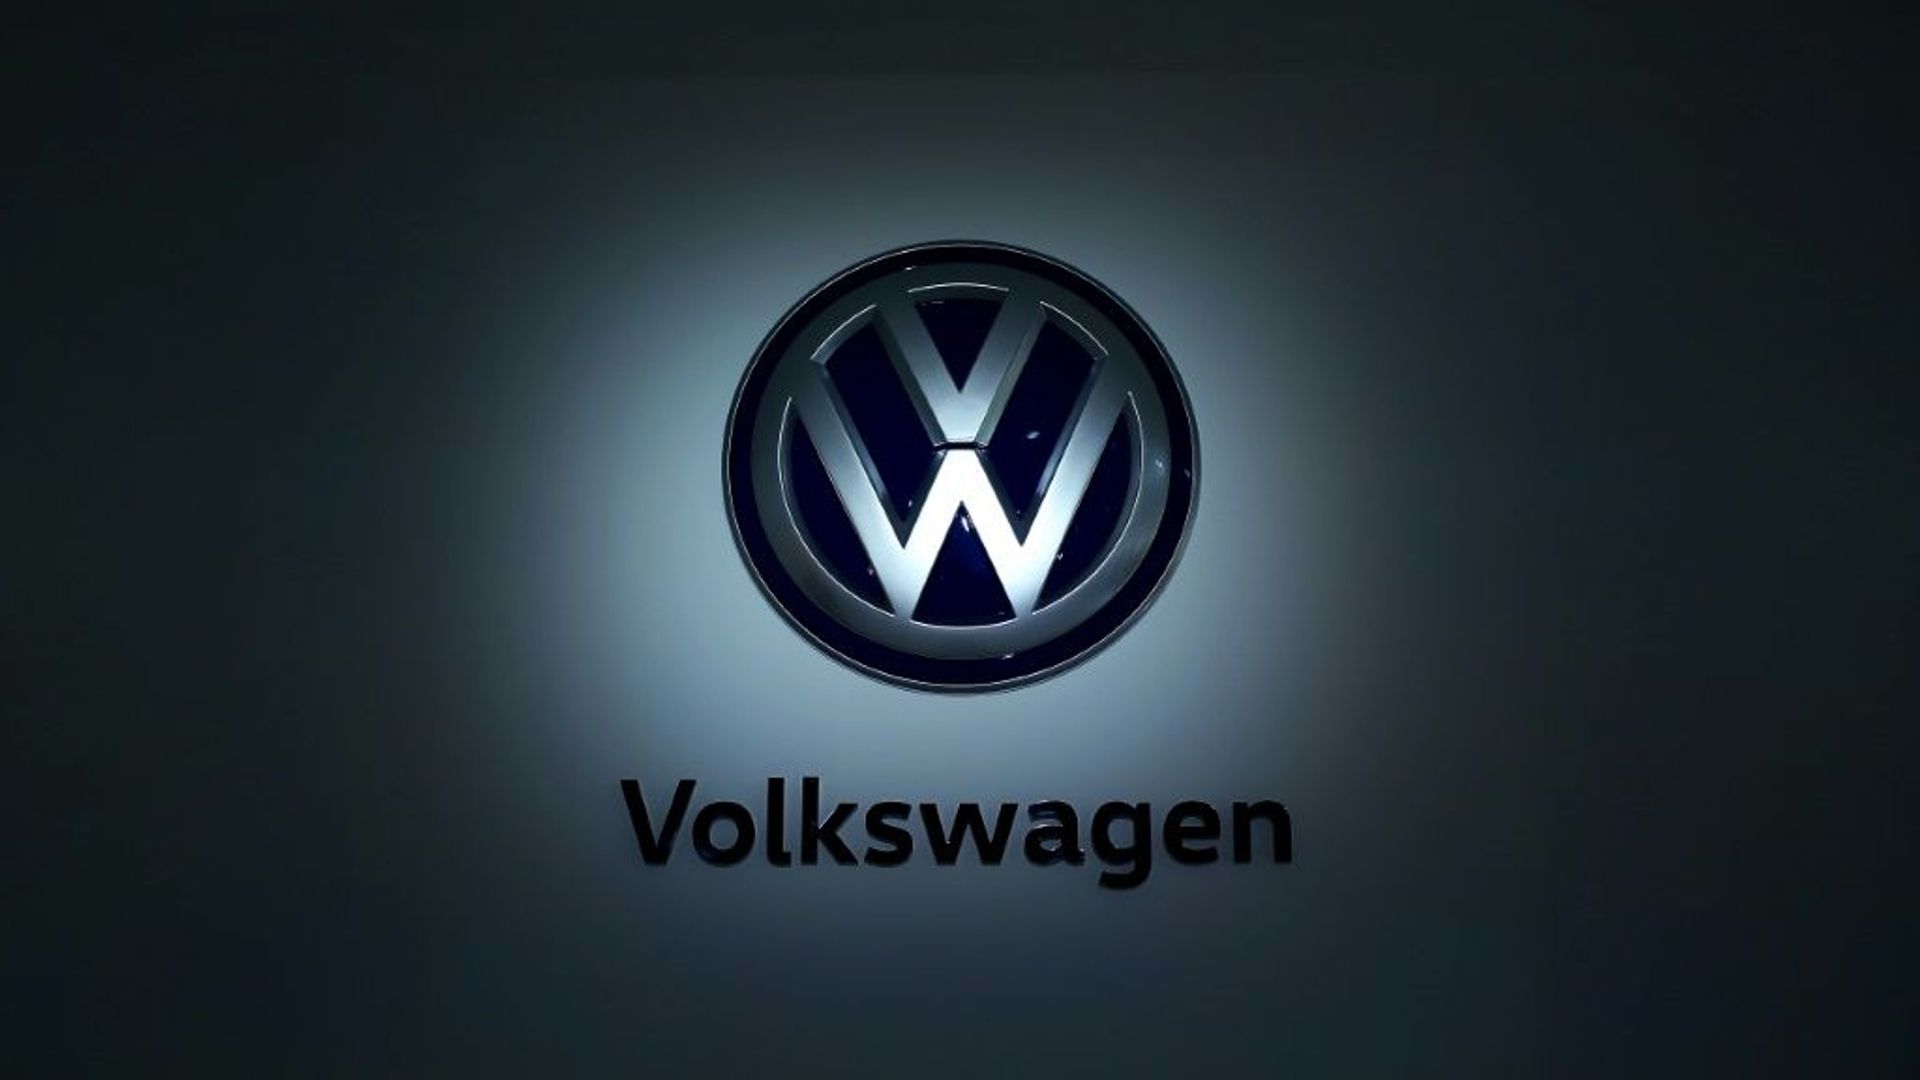 Le groupe Volkswagen a déjà dans son escarcelle les marques de voitures Volkswagen, Seat, Skoda, Audi, Porsche, Lamborghini, Bentley, Bugatti, les motos Ducati, les utilitaires Volkswagen et les fabricants de bus et camions MAN et Scania